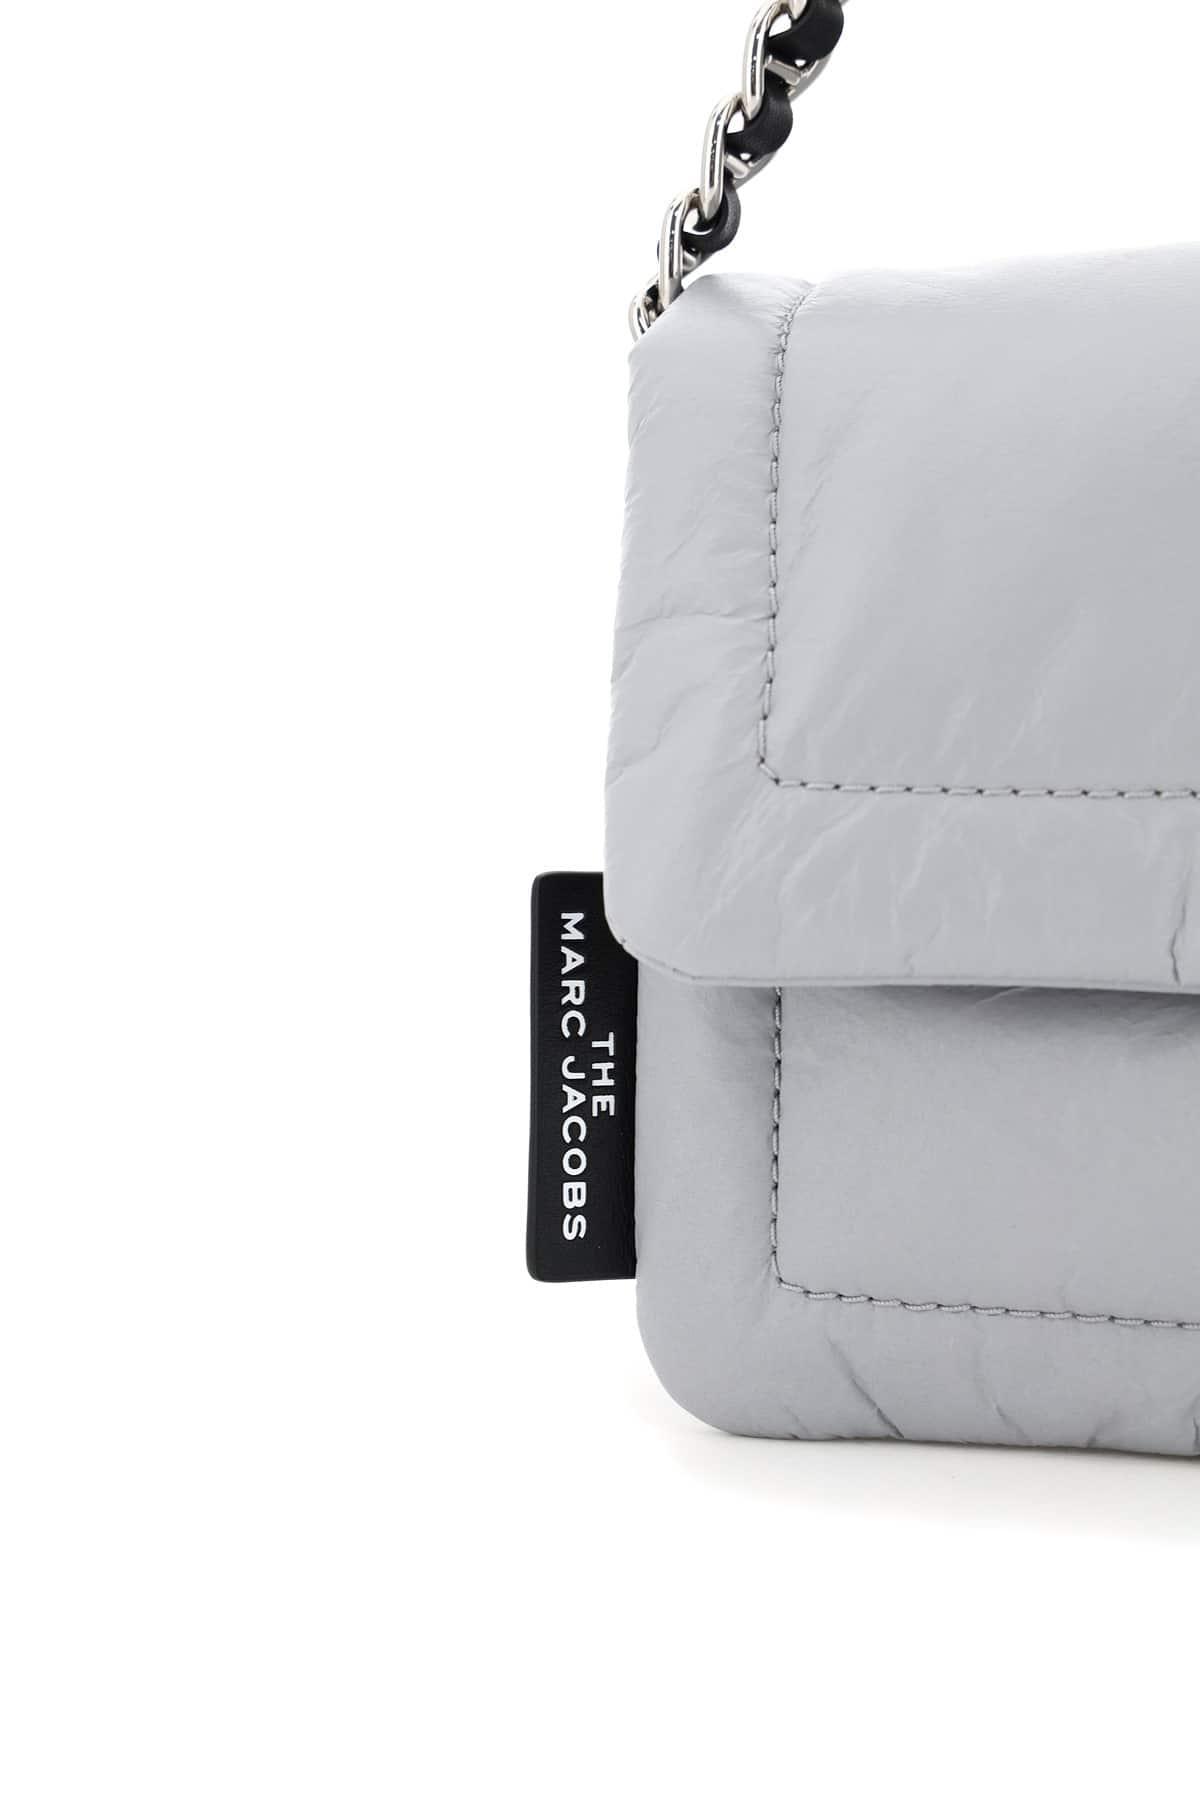 Marc Jacobs Pillow Bag - Grey Shoulder Bags, Handbags - MAR173509